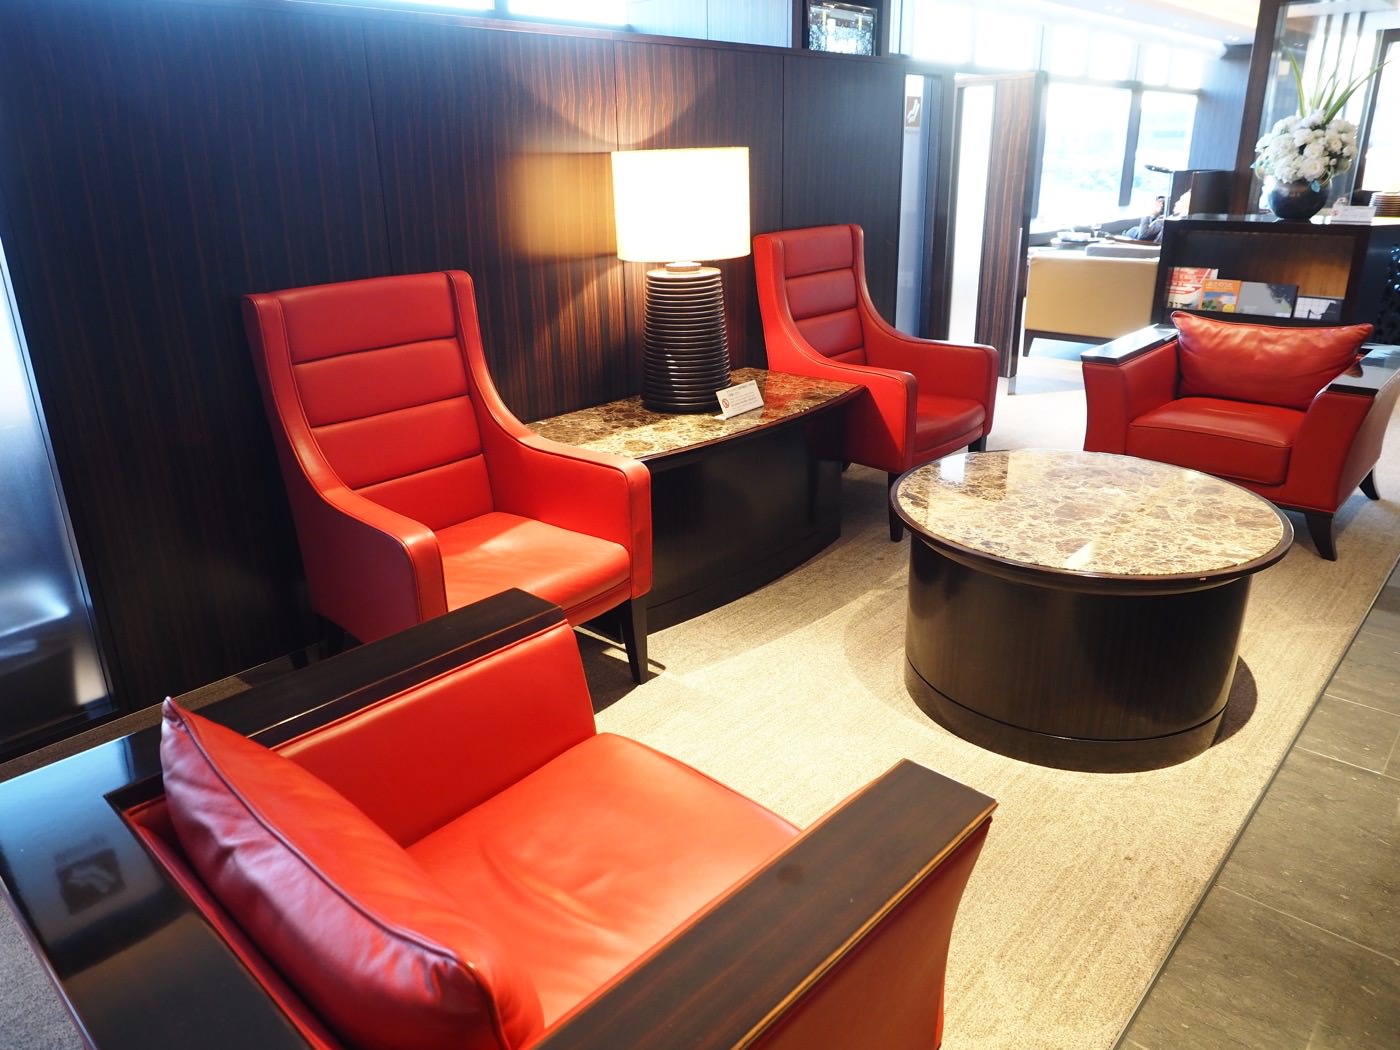 貴賓室 日本千葉 東京成田機場 日航衛星樓頭等貴賓室 JAL Diamond Premier Lounge 國際航廈 - 一口冒險 Bitesized Adventure